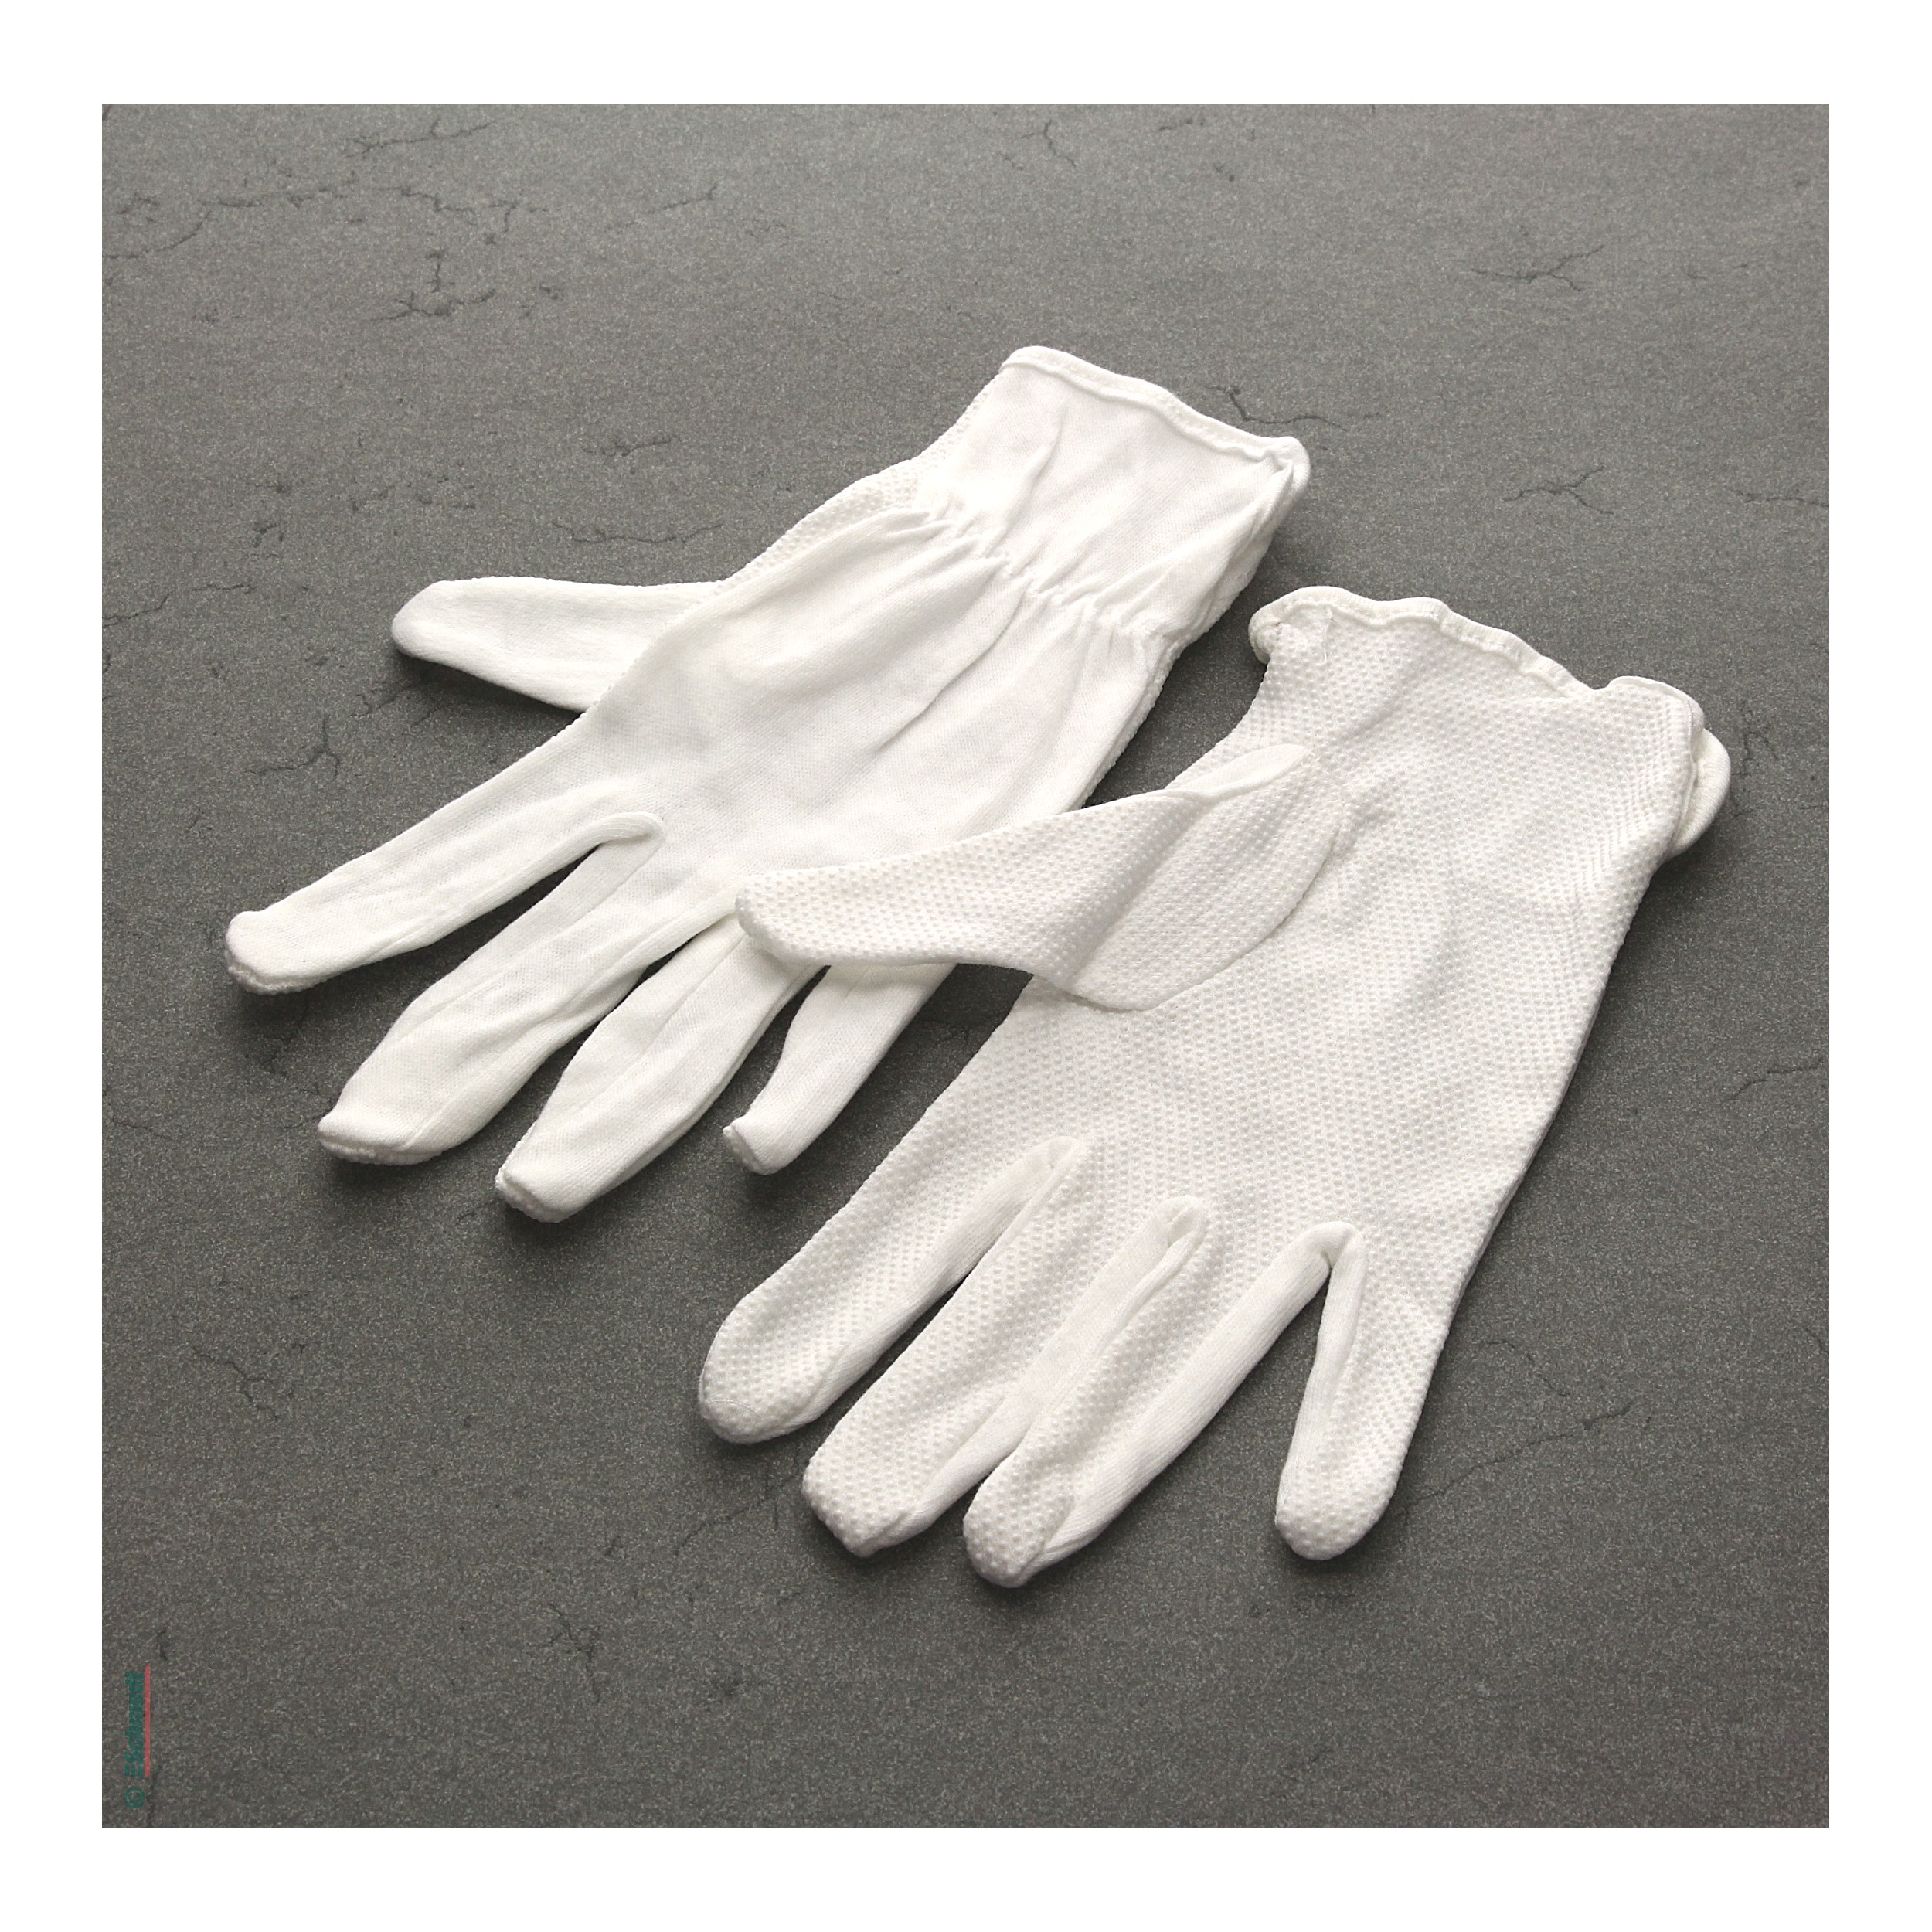 Museums-Baumwollhandschuhe - mit Mikronoppen, weiß - Schutz vor Fingerabdrücken... - Bild-1